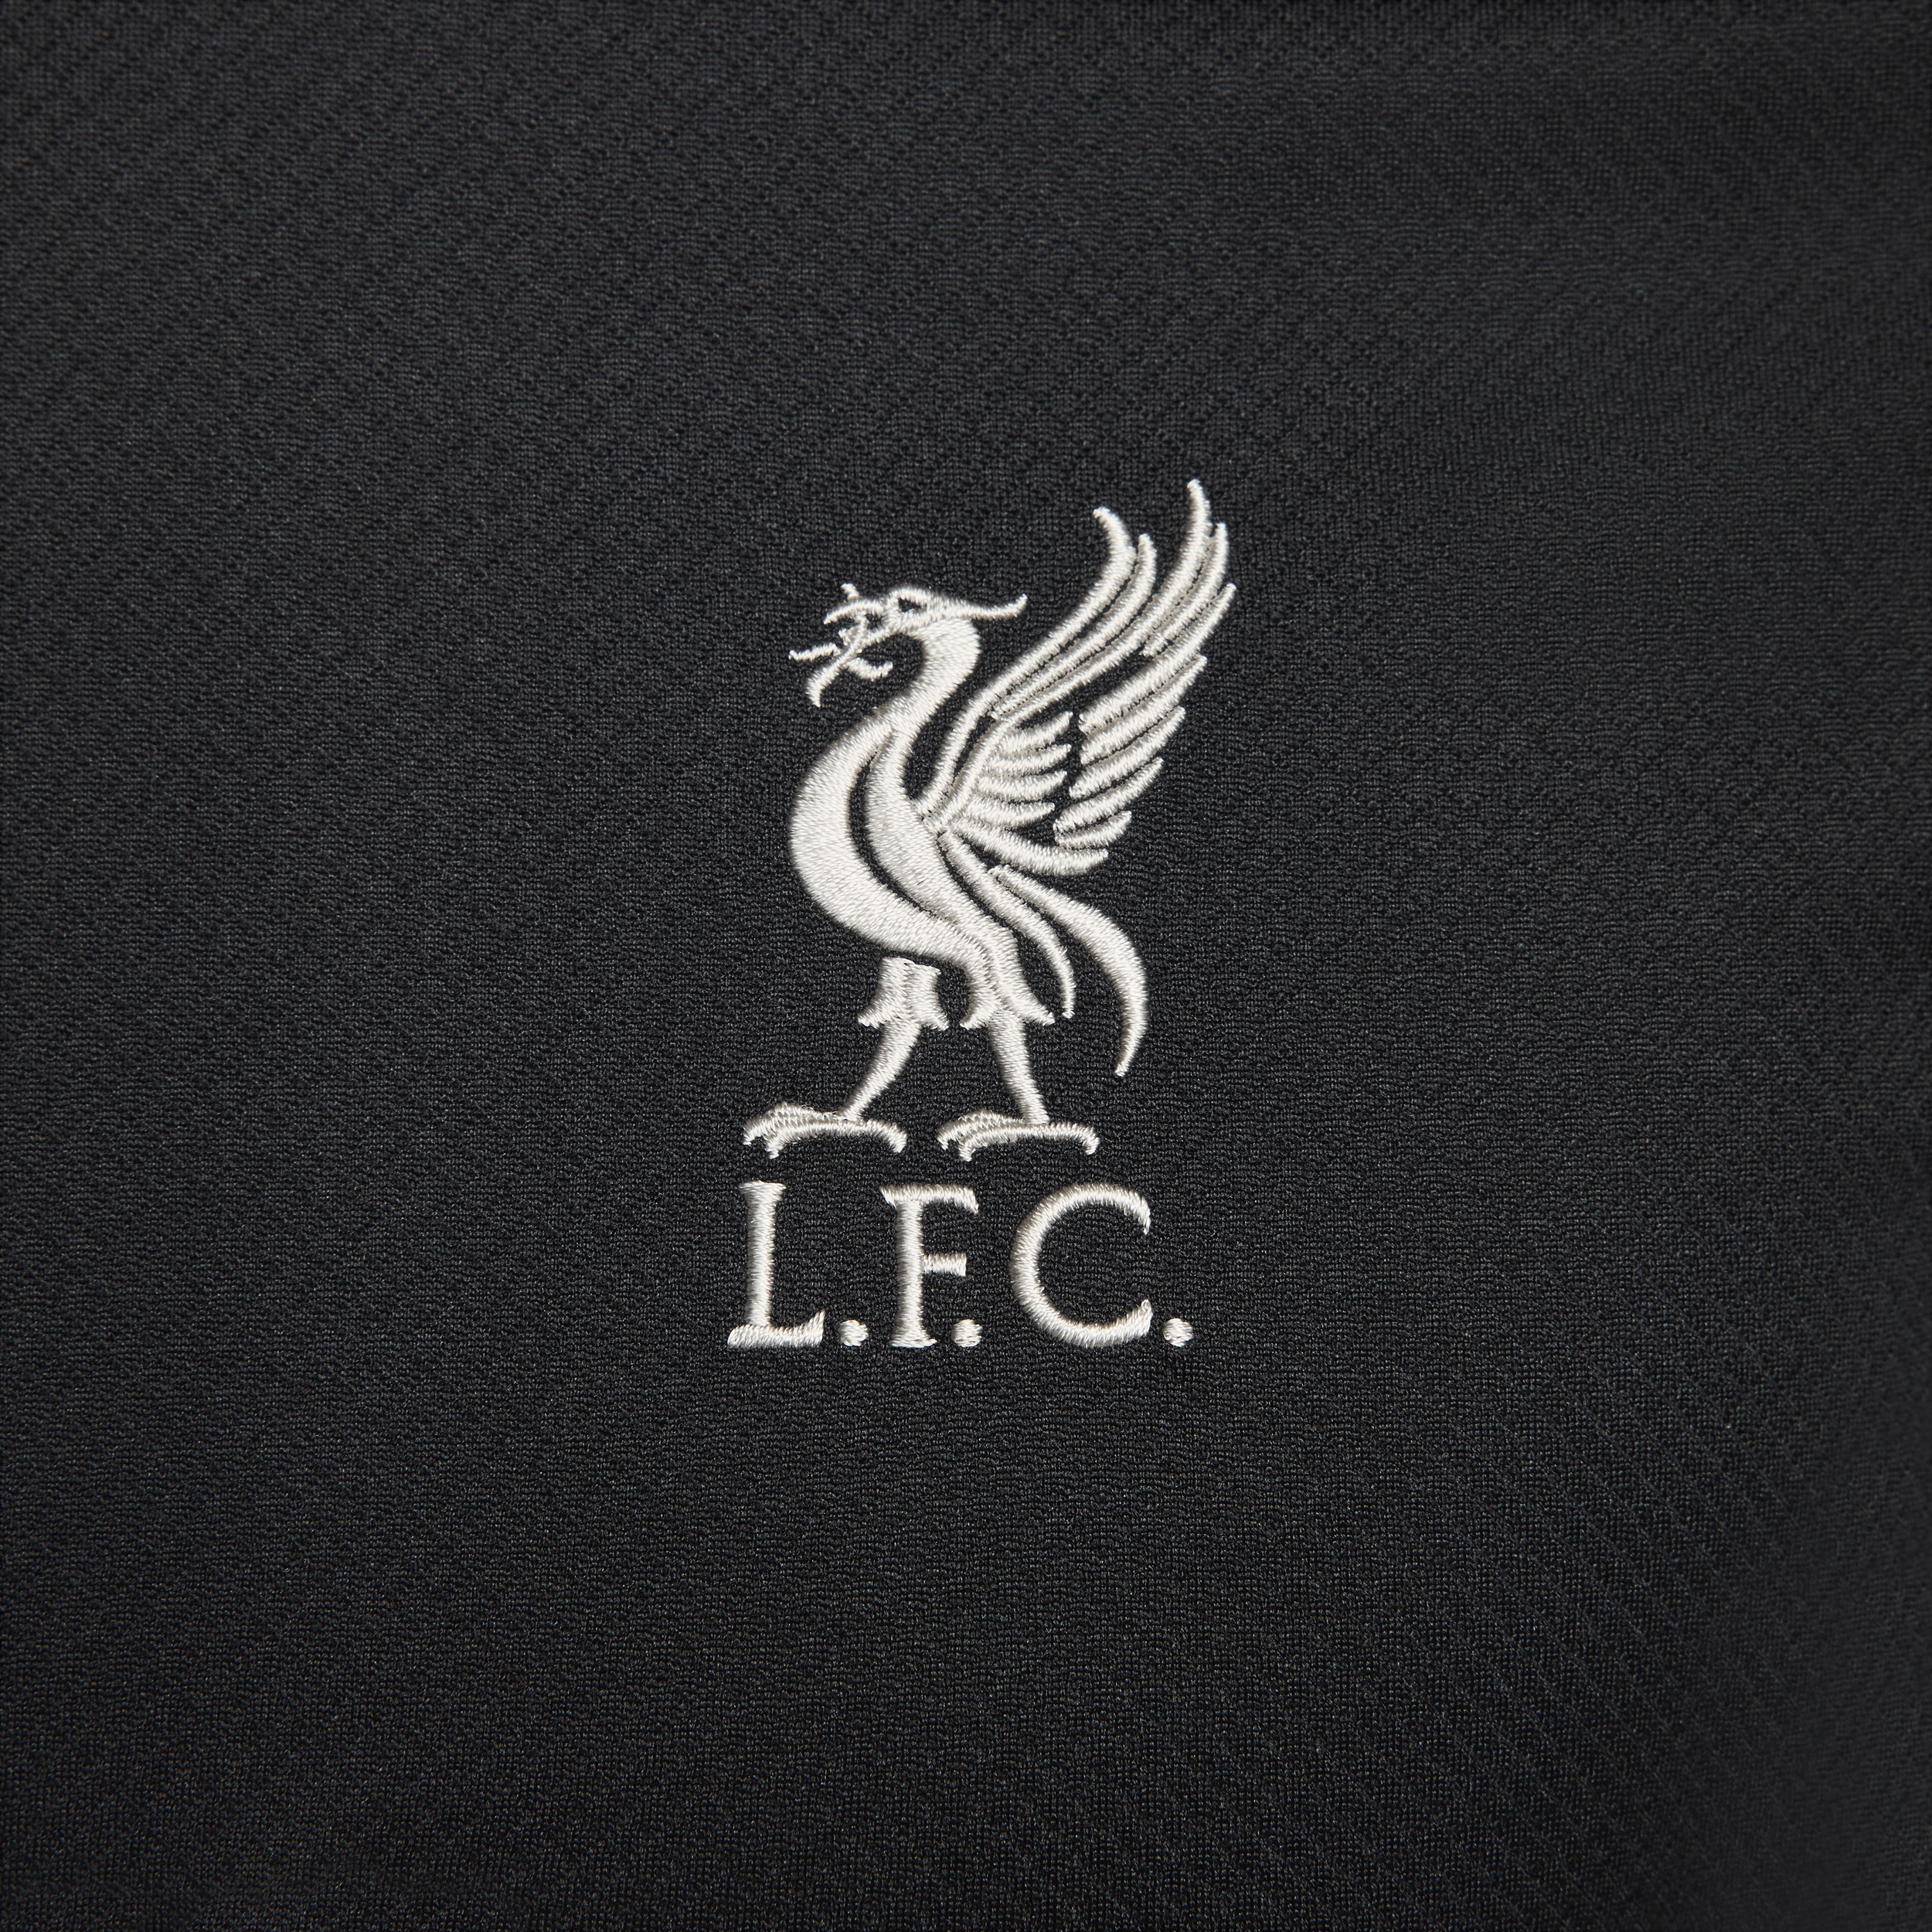 Nike Liverpool FC Strike Dri-FIT knit voetbaltop met korte mouwen voor heren Zwart